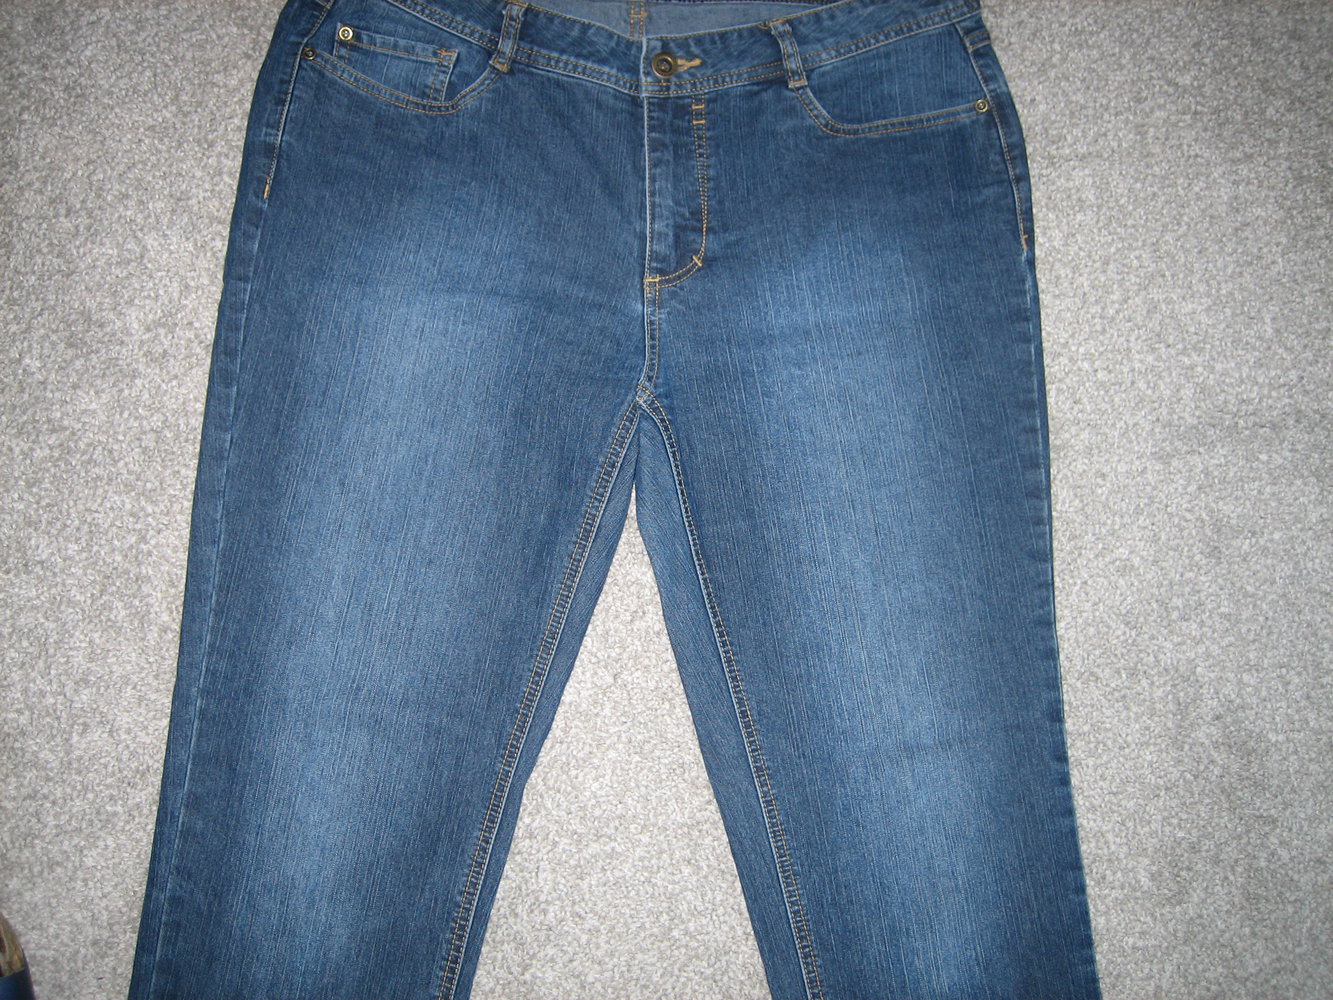 Superbequeme Jeans Gr. 42, vorteilhafter, perfekter Schnitt - ein Lieblingsteil!